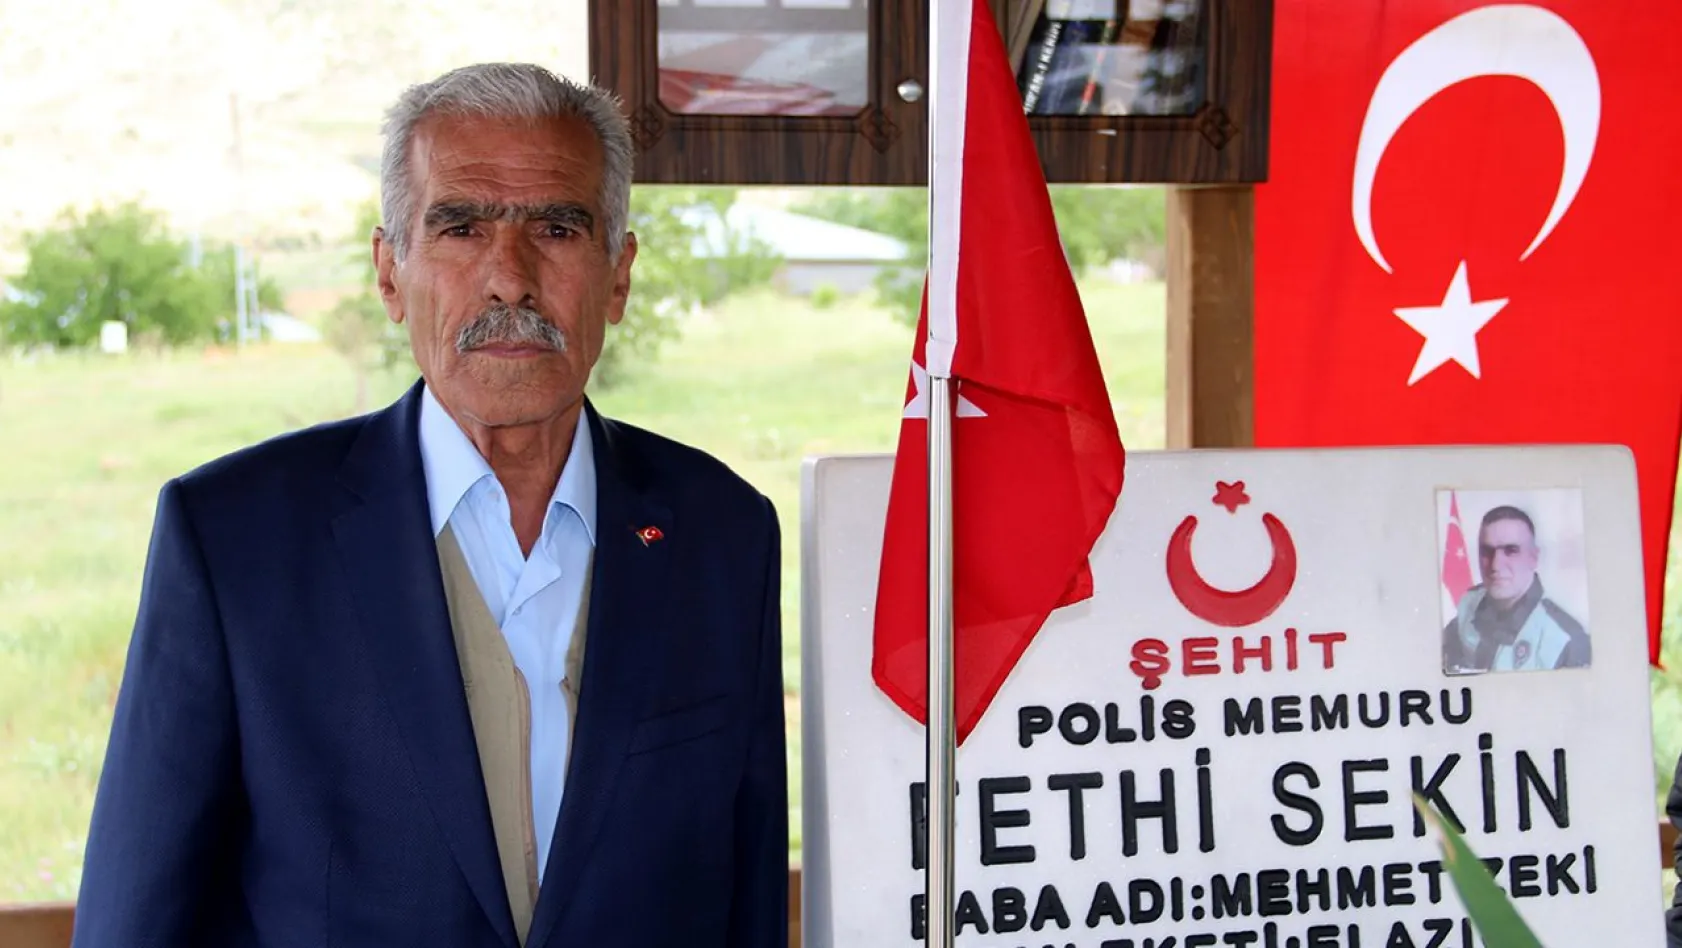 Mehmet Zeki Sekin için taziye mesajları